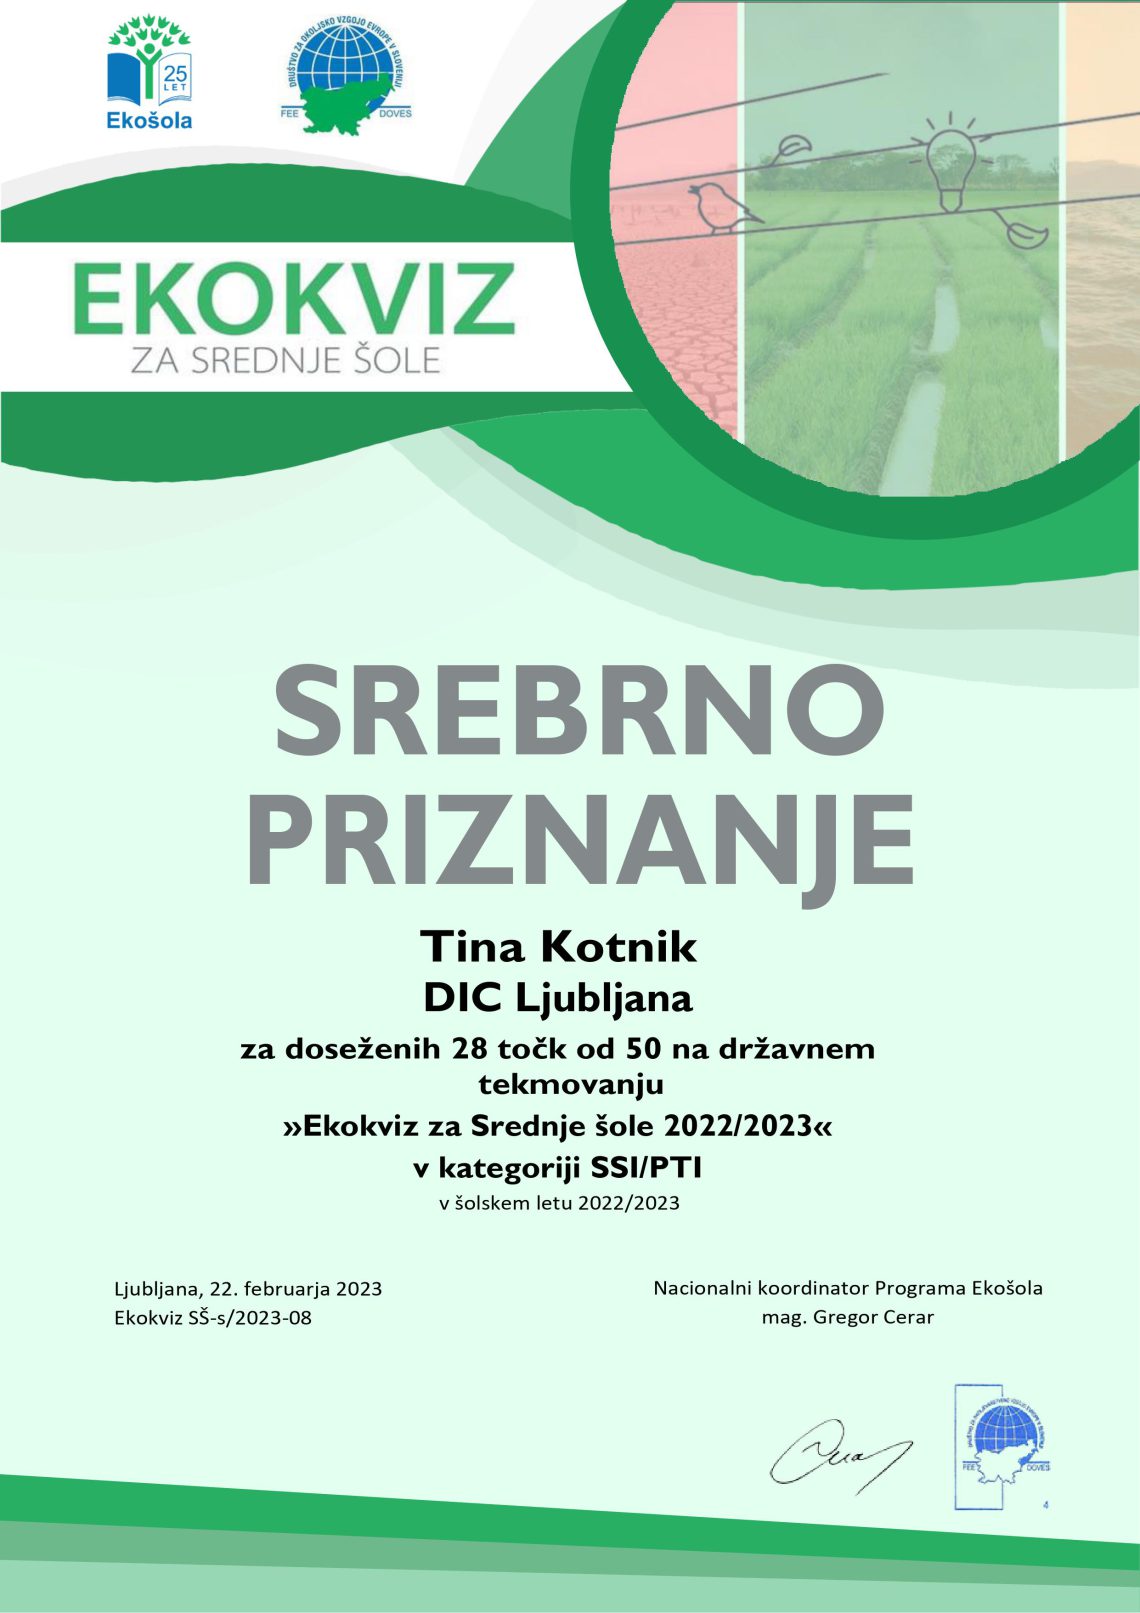 Ekokviz Srebrno priznanje Tina Kotnik. Ekokviz za srednje šole 2022/2023 v kategoriji SSI PTI